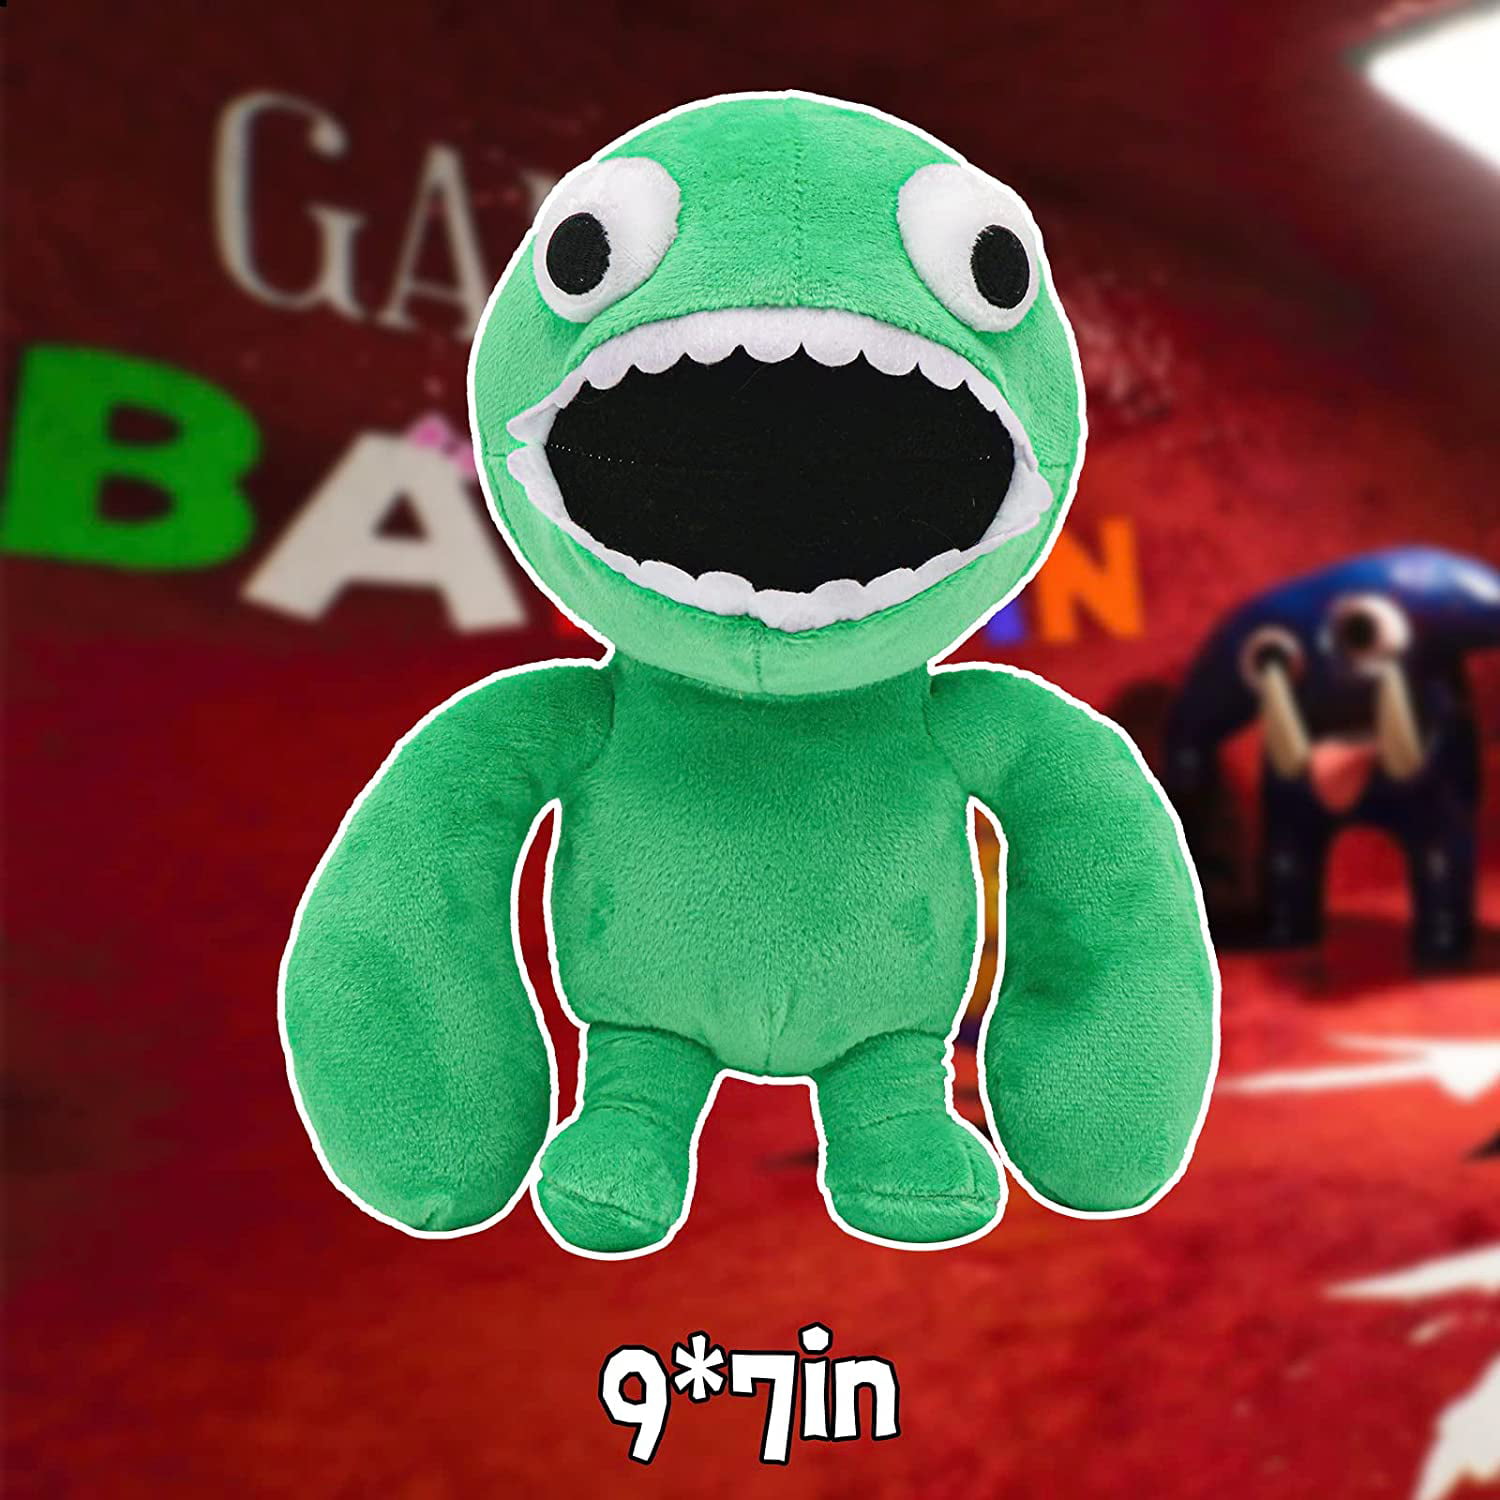 Novo 6 Garten Of Plush Game Doll Green Jumbo Josh Monster Soft